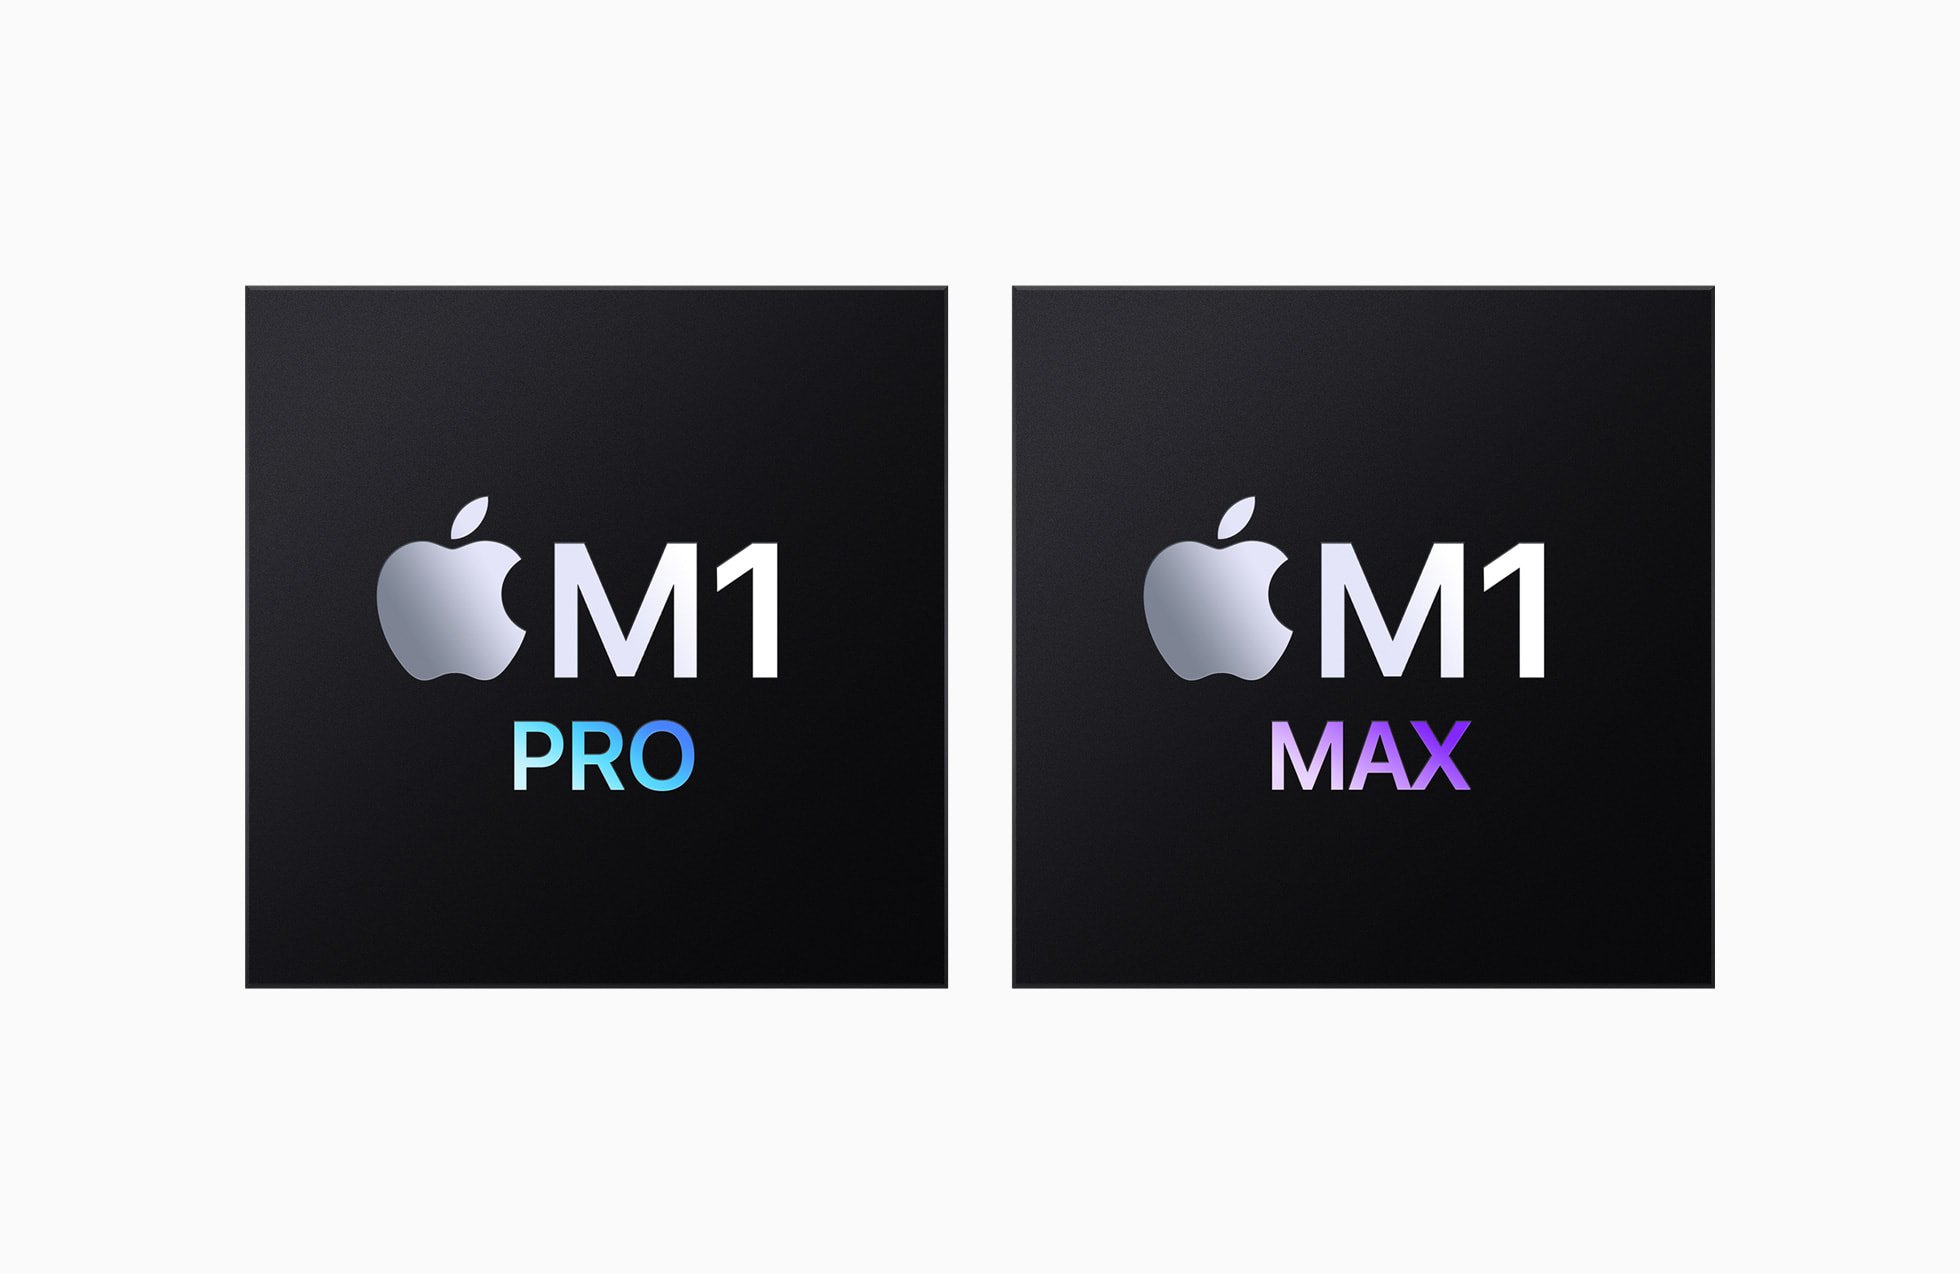 Próximas gerações do Apple Silicon terão variantes mais poderosas como o M1 Pro e M1 Max.